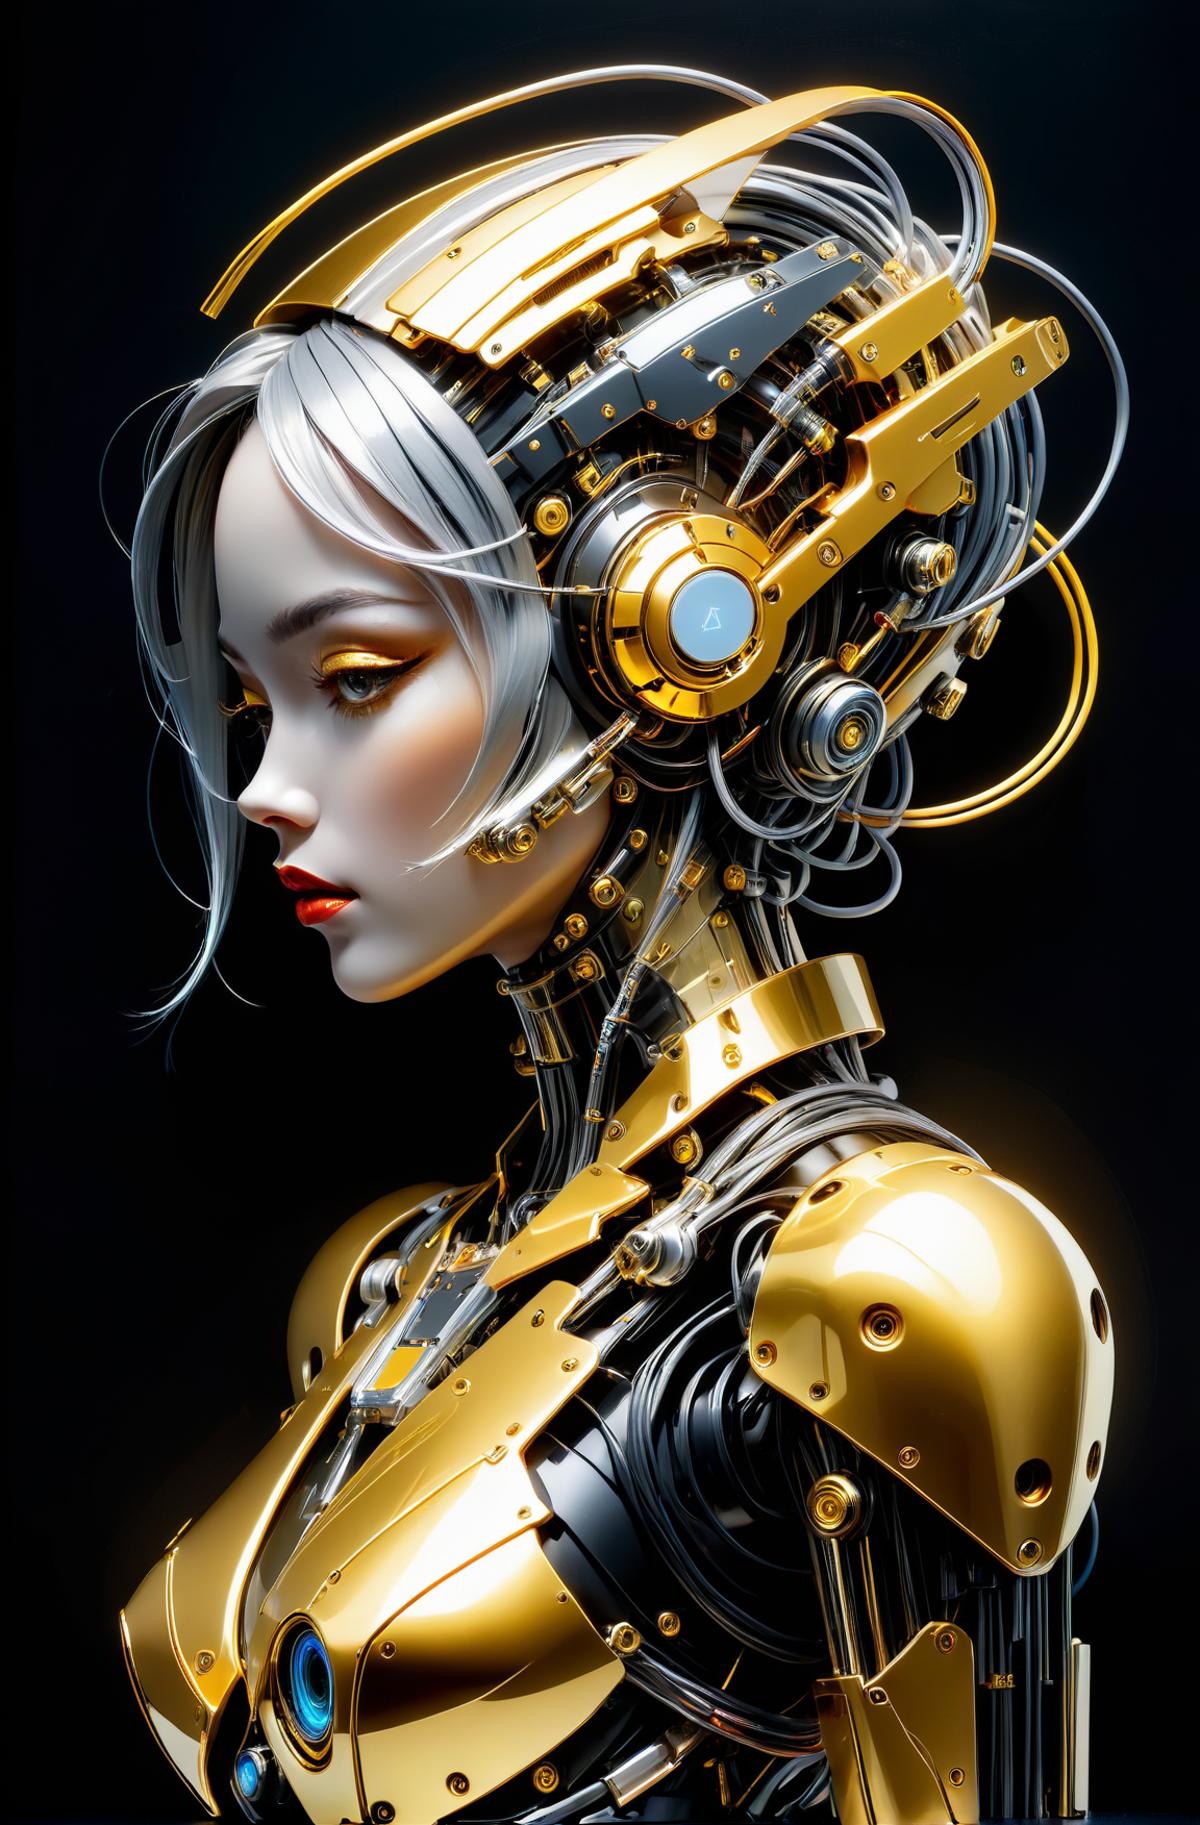 AI model image by DeViLDoNia